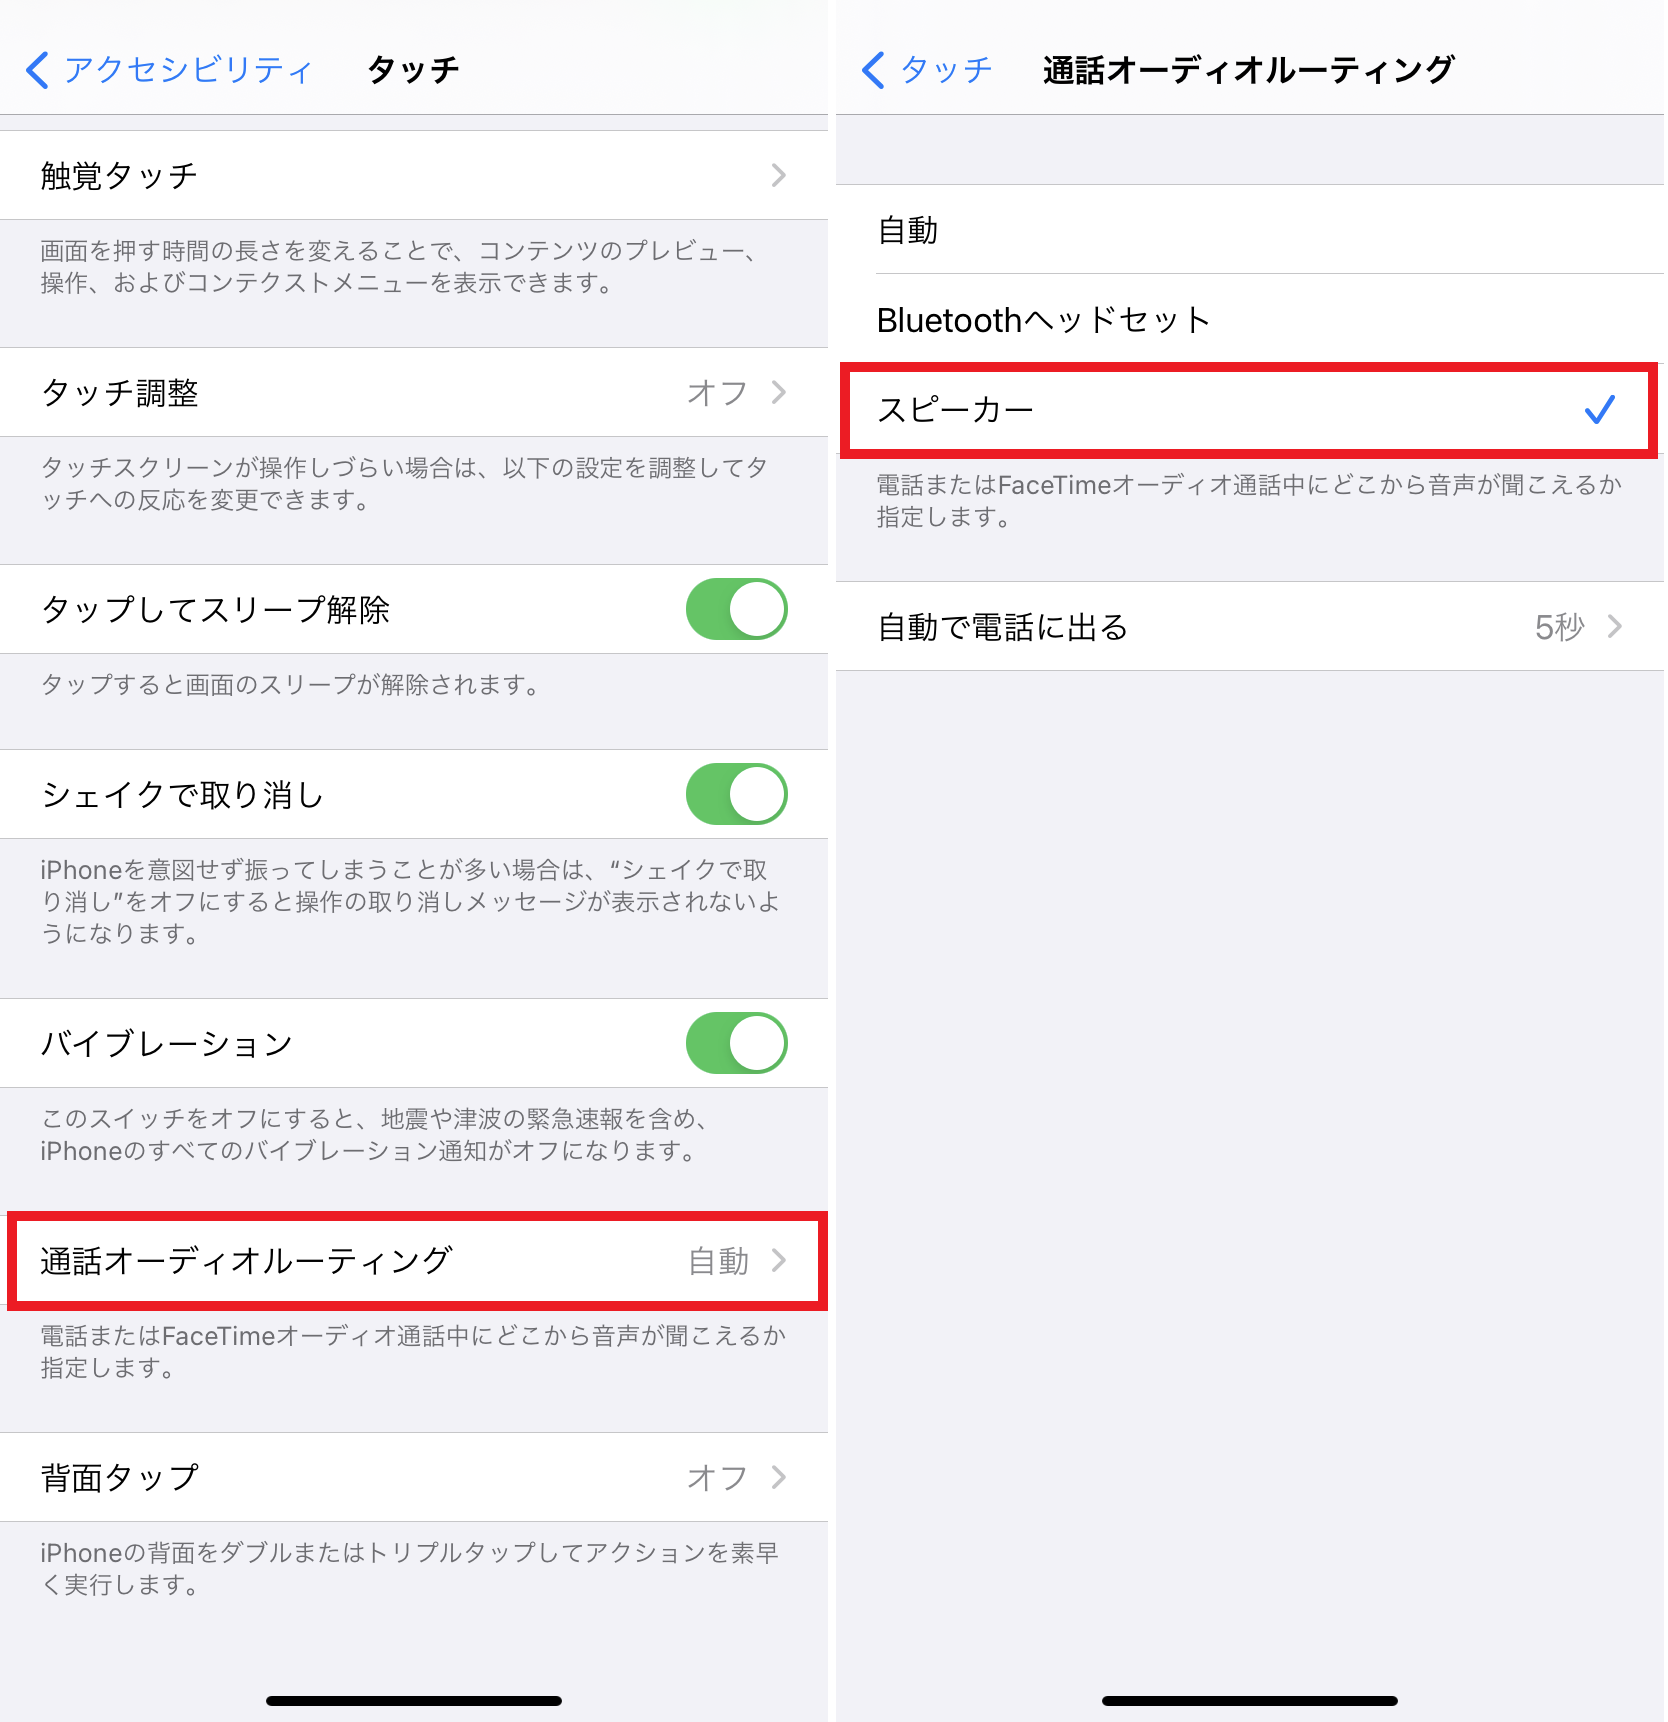 電話に出たらハンズフリー 自動でスピーカー通話にする方法 Iphone Tips Engadget 日本版